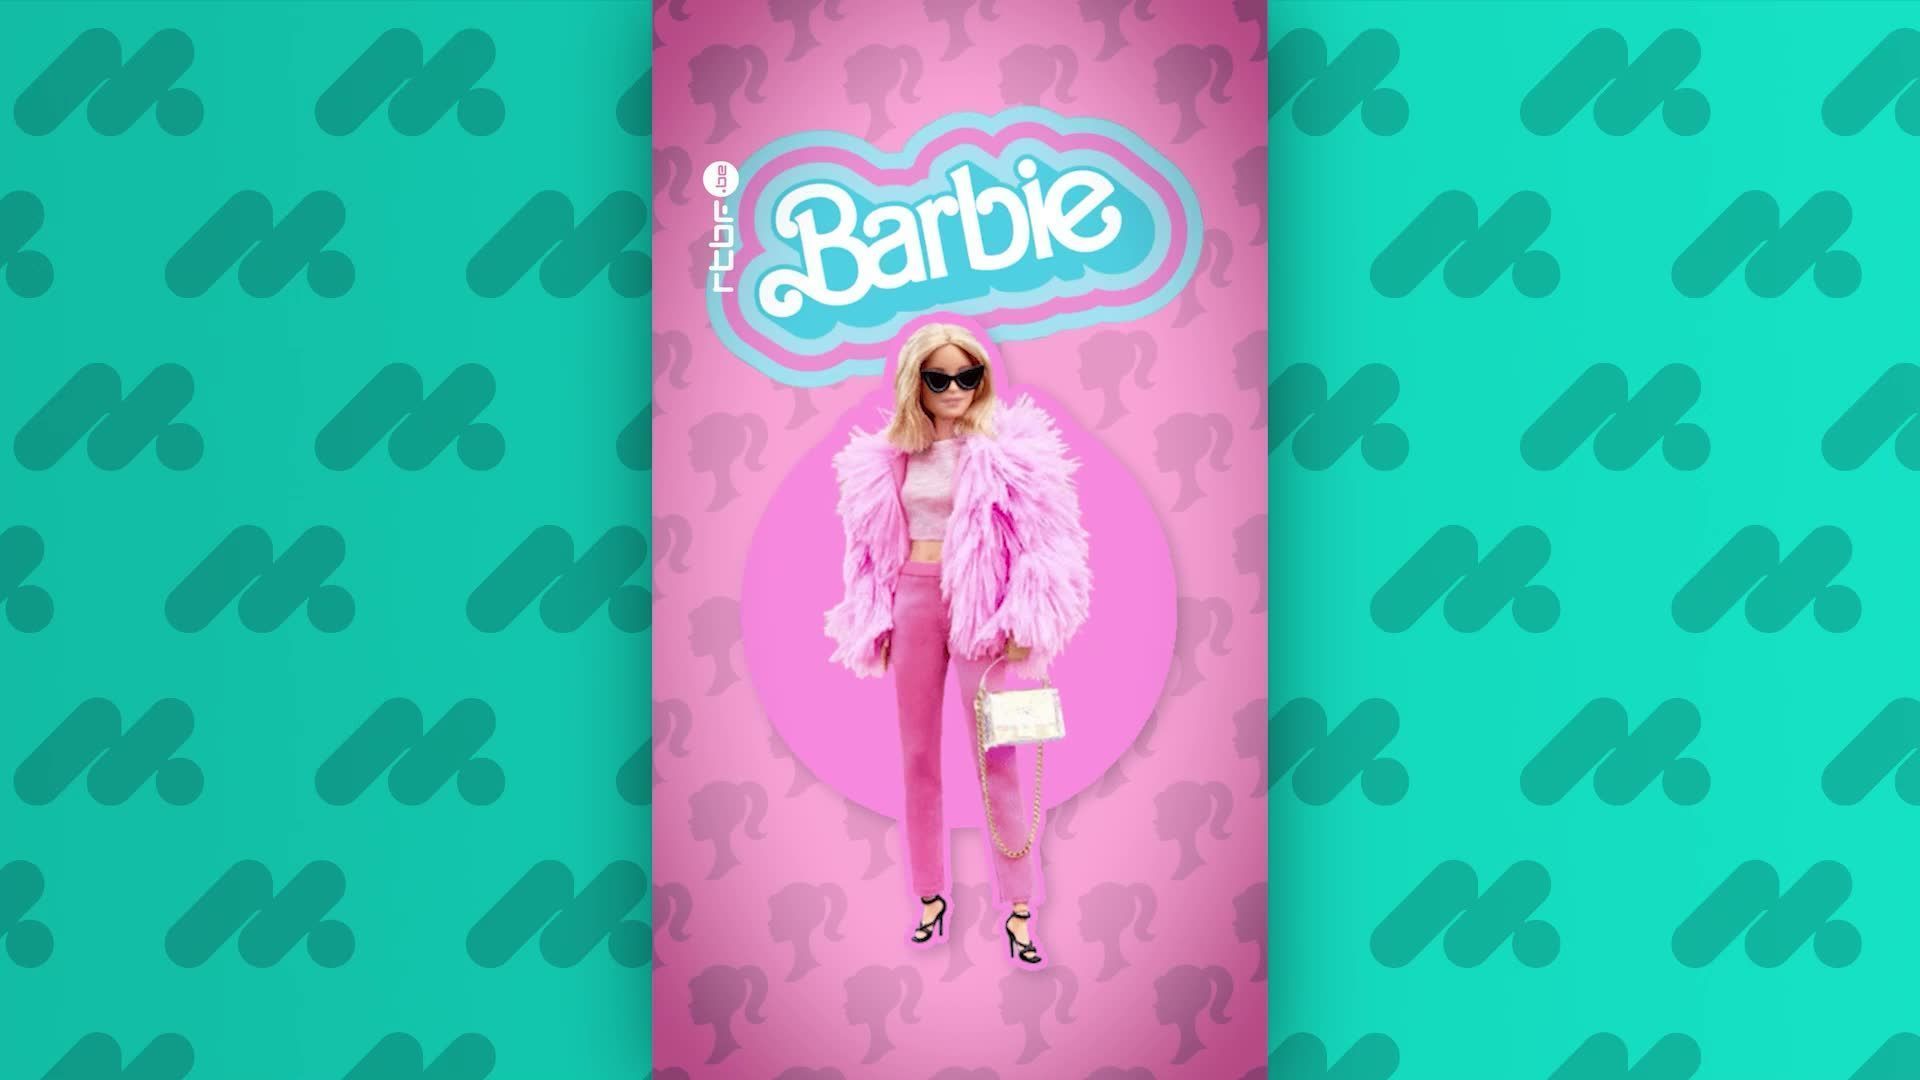 Comment Bild Lilli a donné naissance à Barbie avant de tomber dans l'oubli